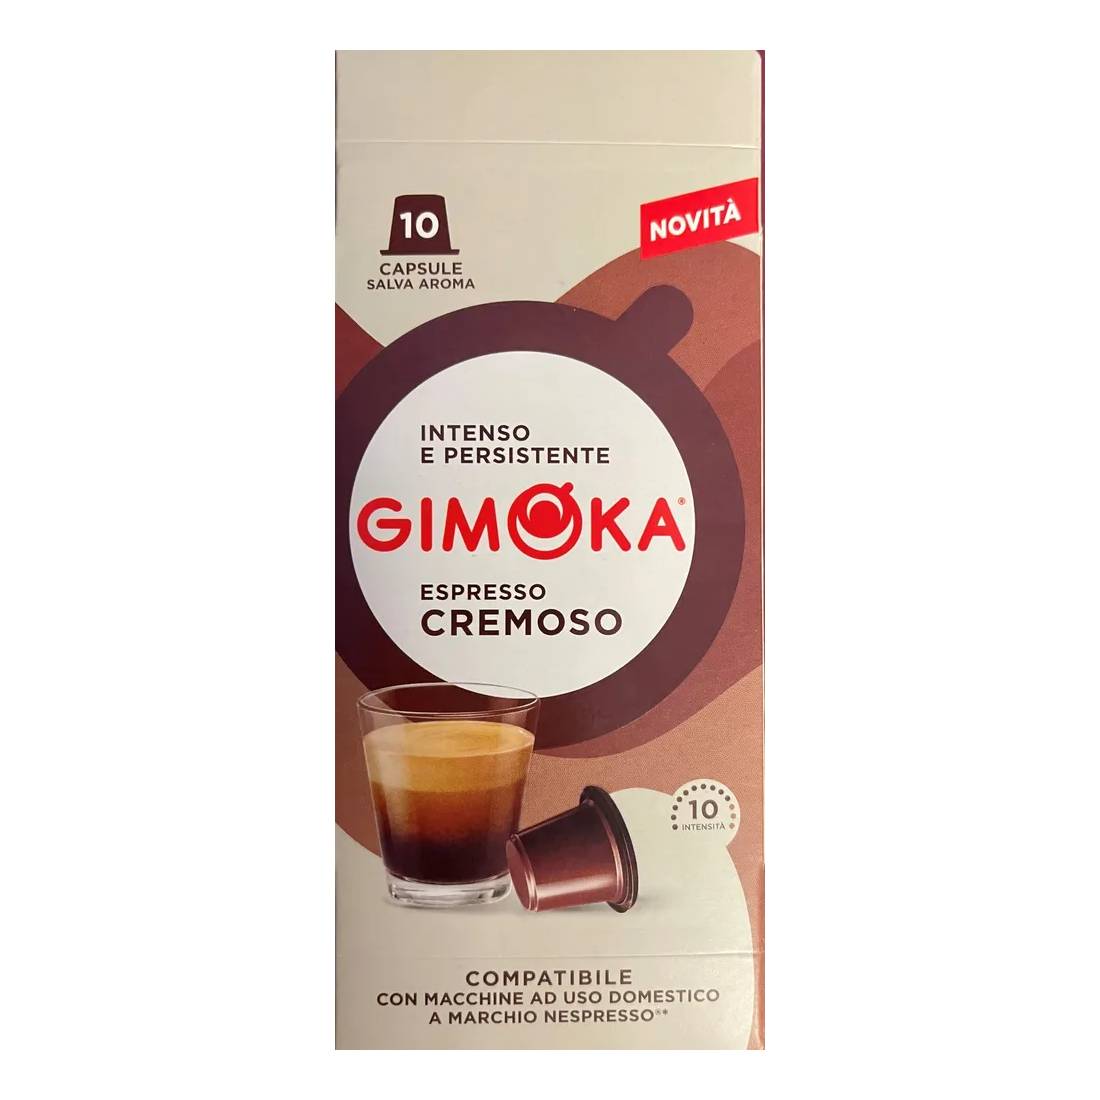 Капсулы Gimoka Nespresso Classic Cremoso, 10 шт кофе в капсулах covim premium 2 уп х 10 шт